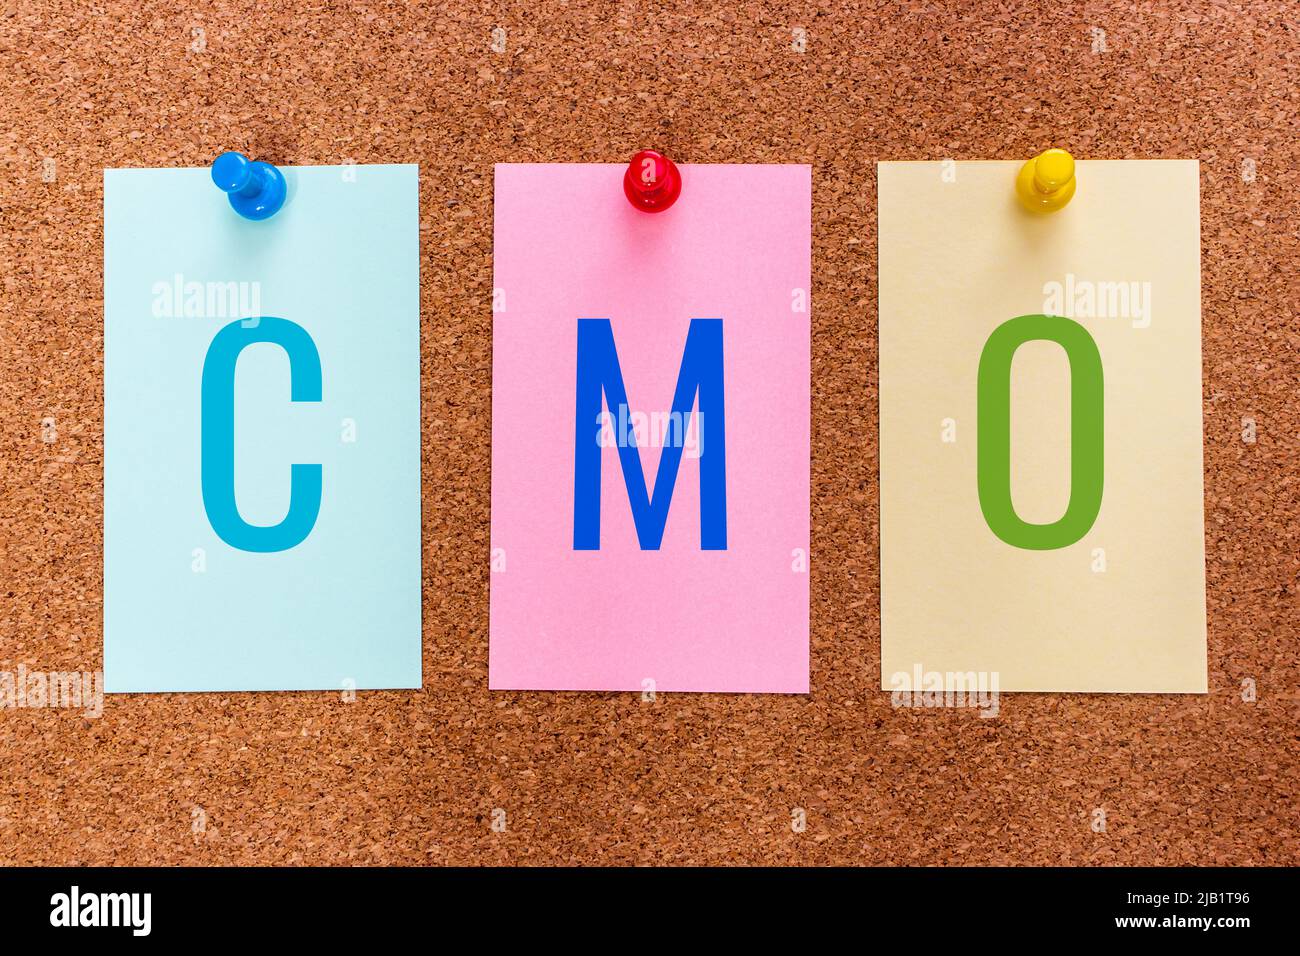 3 Buchstaben Stichwort CMO (Chief Marketing Officer), ein Geschäftsführer, der für Marketingaktivitäten in der Organisation verantwortlich ist, auf Aufklebern auf Korkbrett Stockfoto